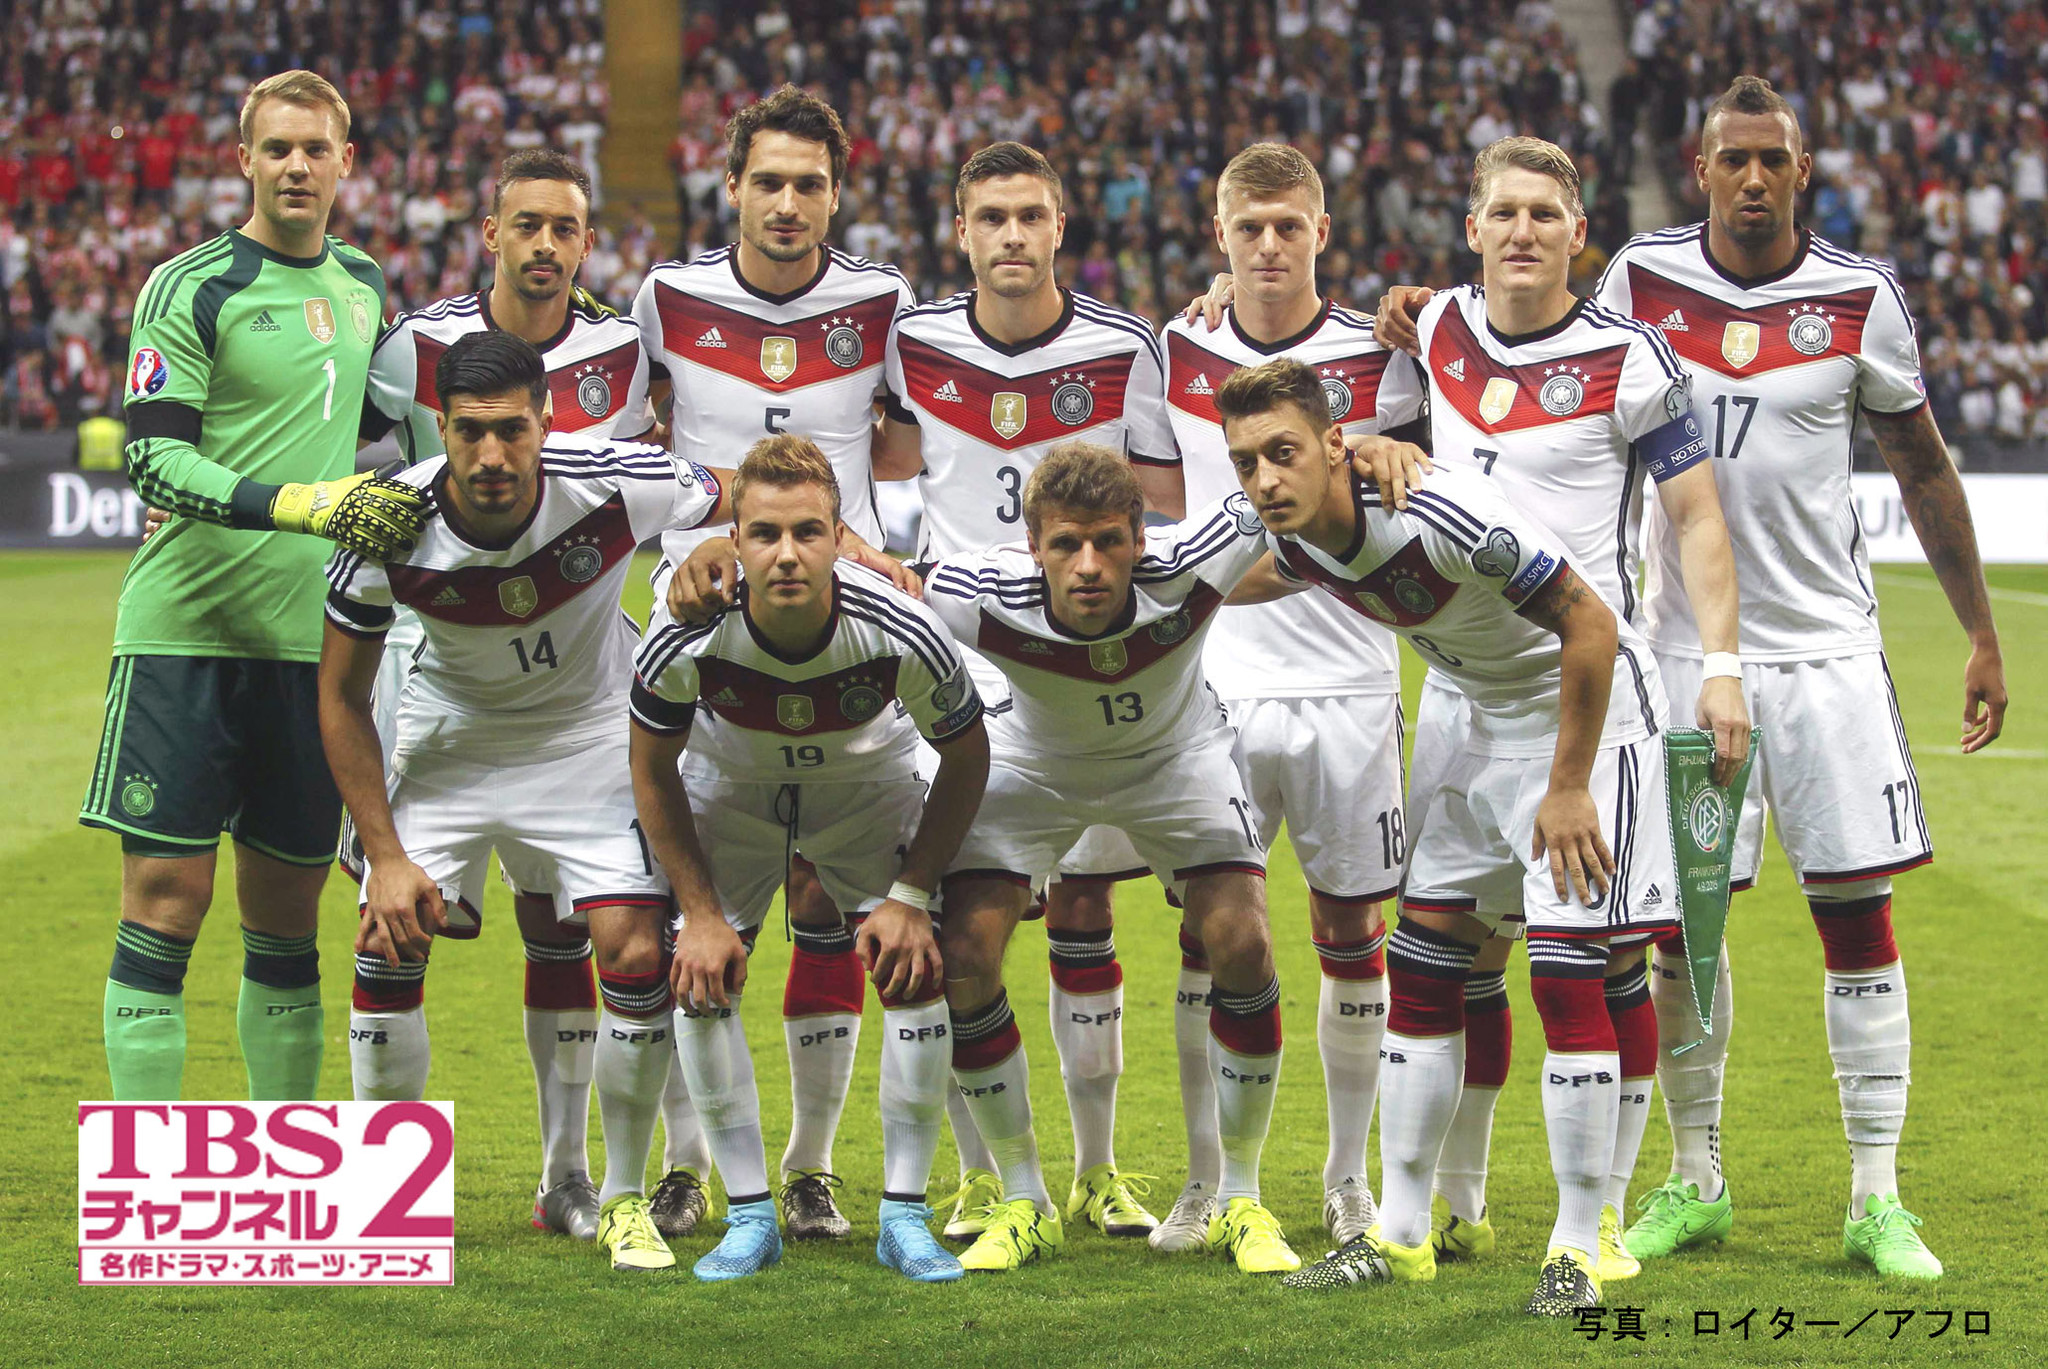 サッカードイツ代表 の国際試合2試合をcs放送 Tbsチャンネル2 で独占生中継 11 14 土 フランスvsドイツ 11 18 水 ドイツvsオランダ 株式会社tbsテレビのプレスリリース